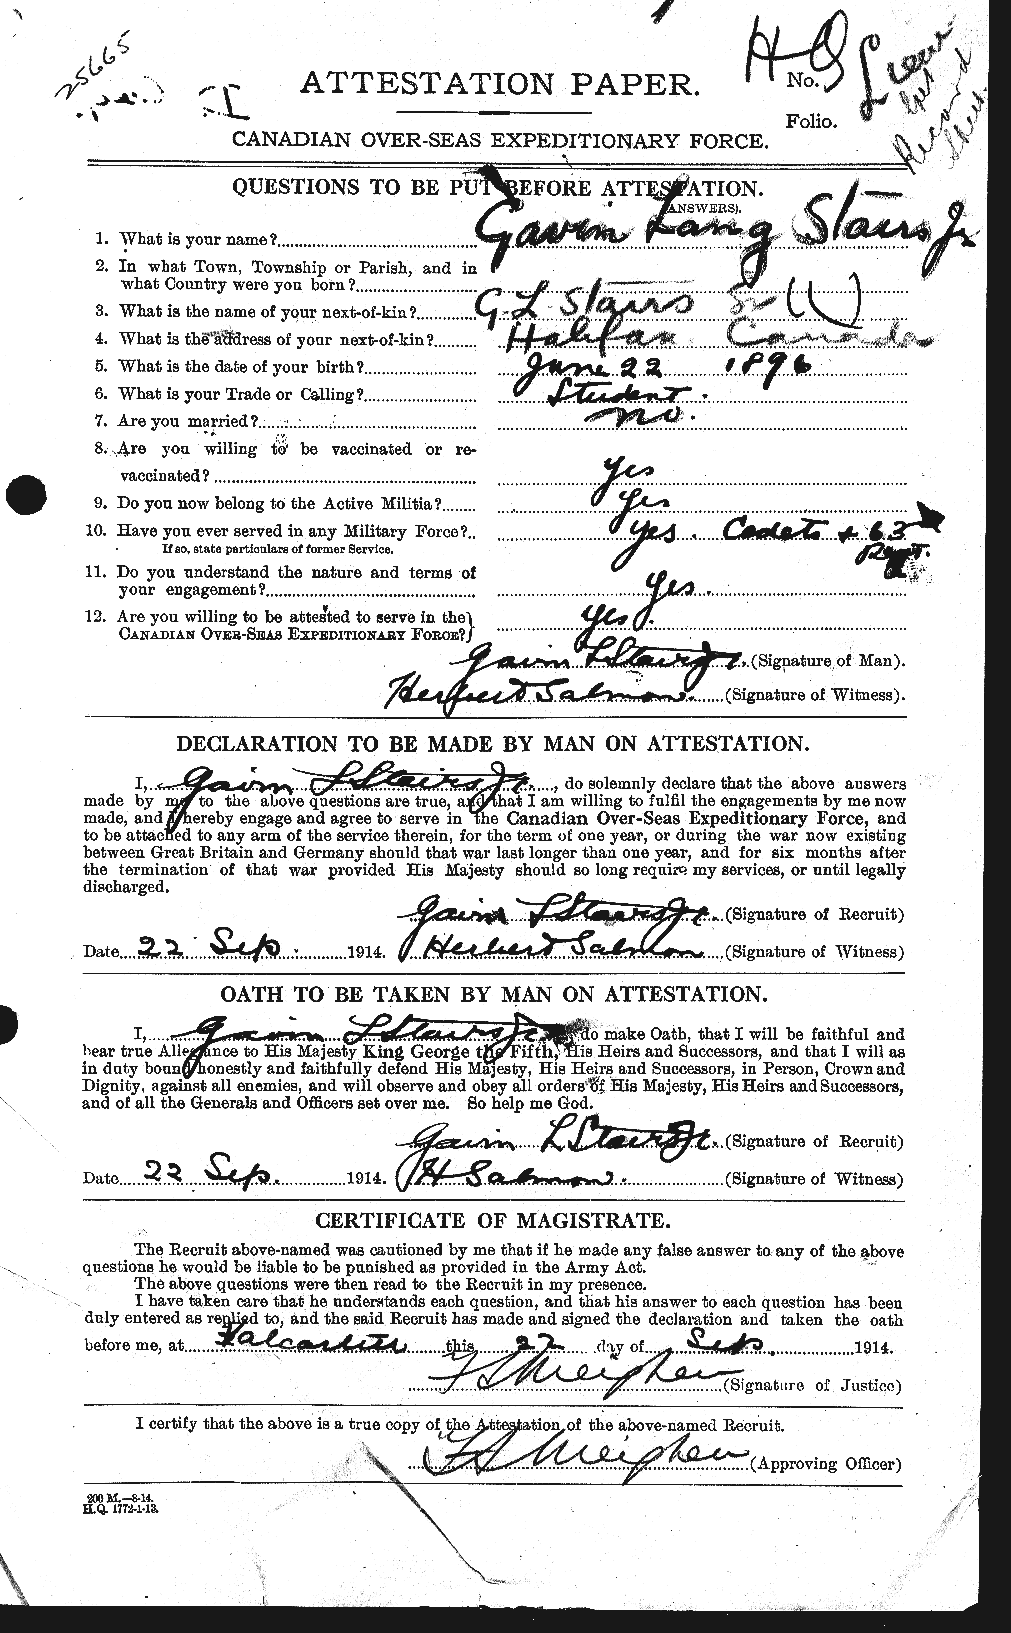 Dossiers du Personnel de la Première Guerre mondiale - CEC 116814a